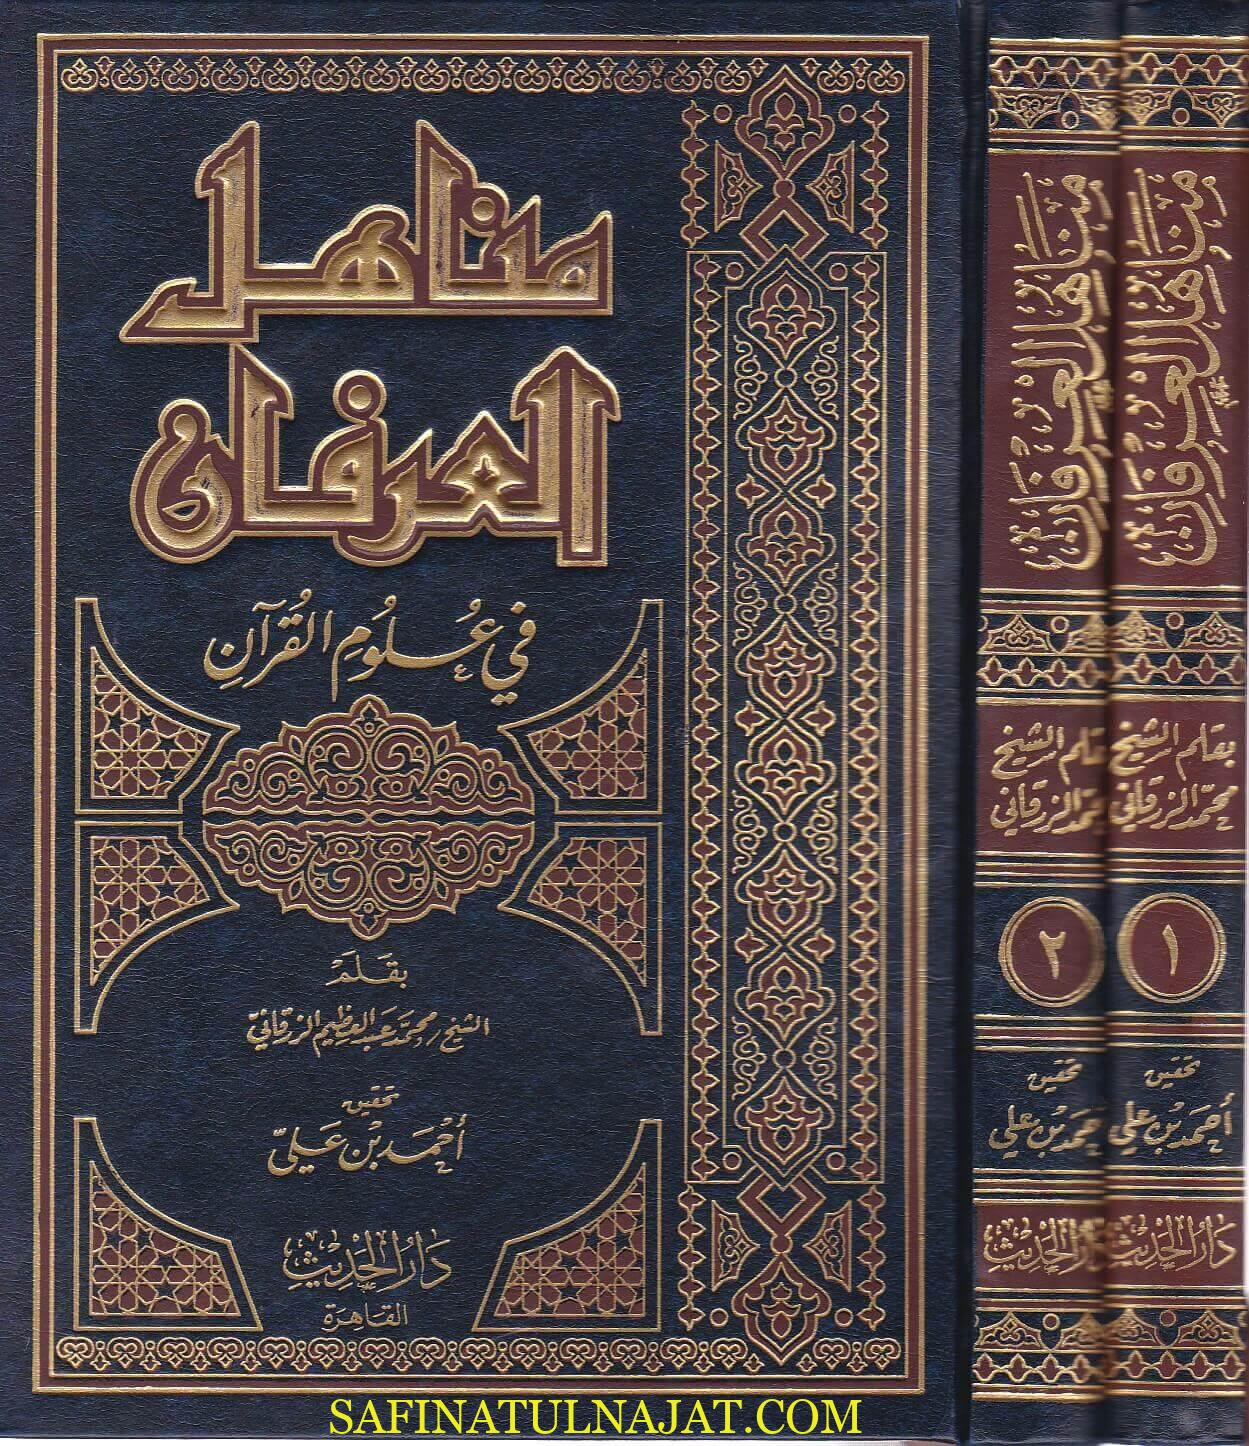 مصادر الشكر في علوم القرآن ، محمد عبد العظيم الزرقاني ، سفينة النجاة.